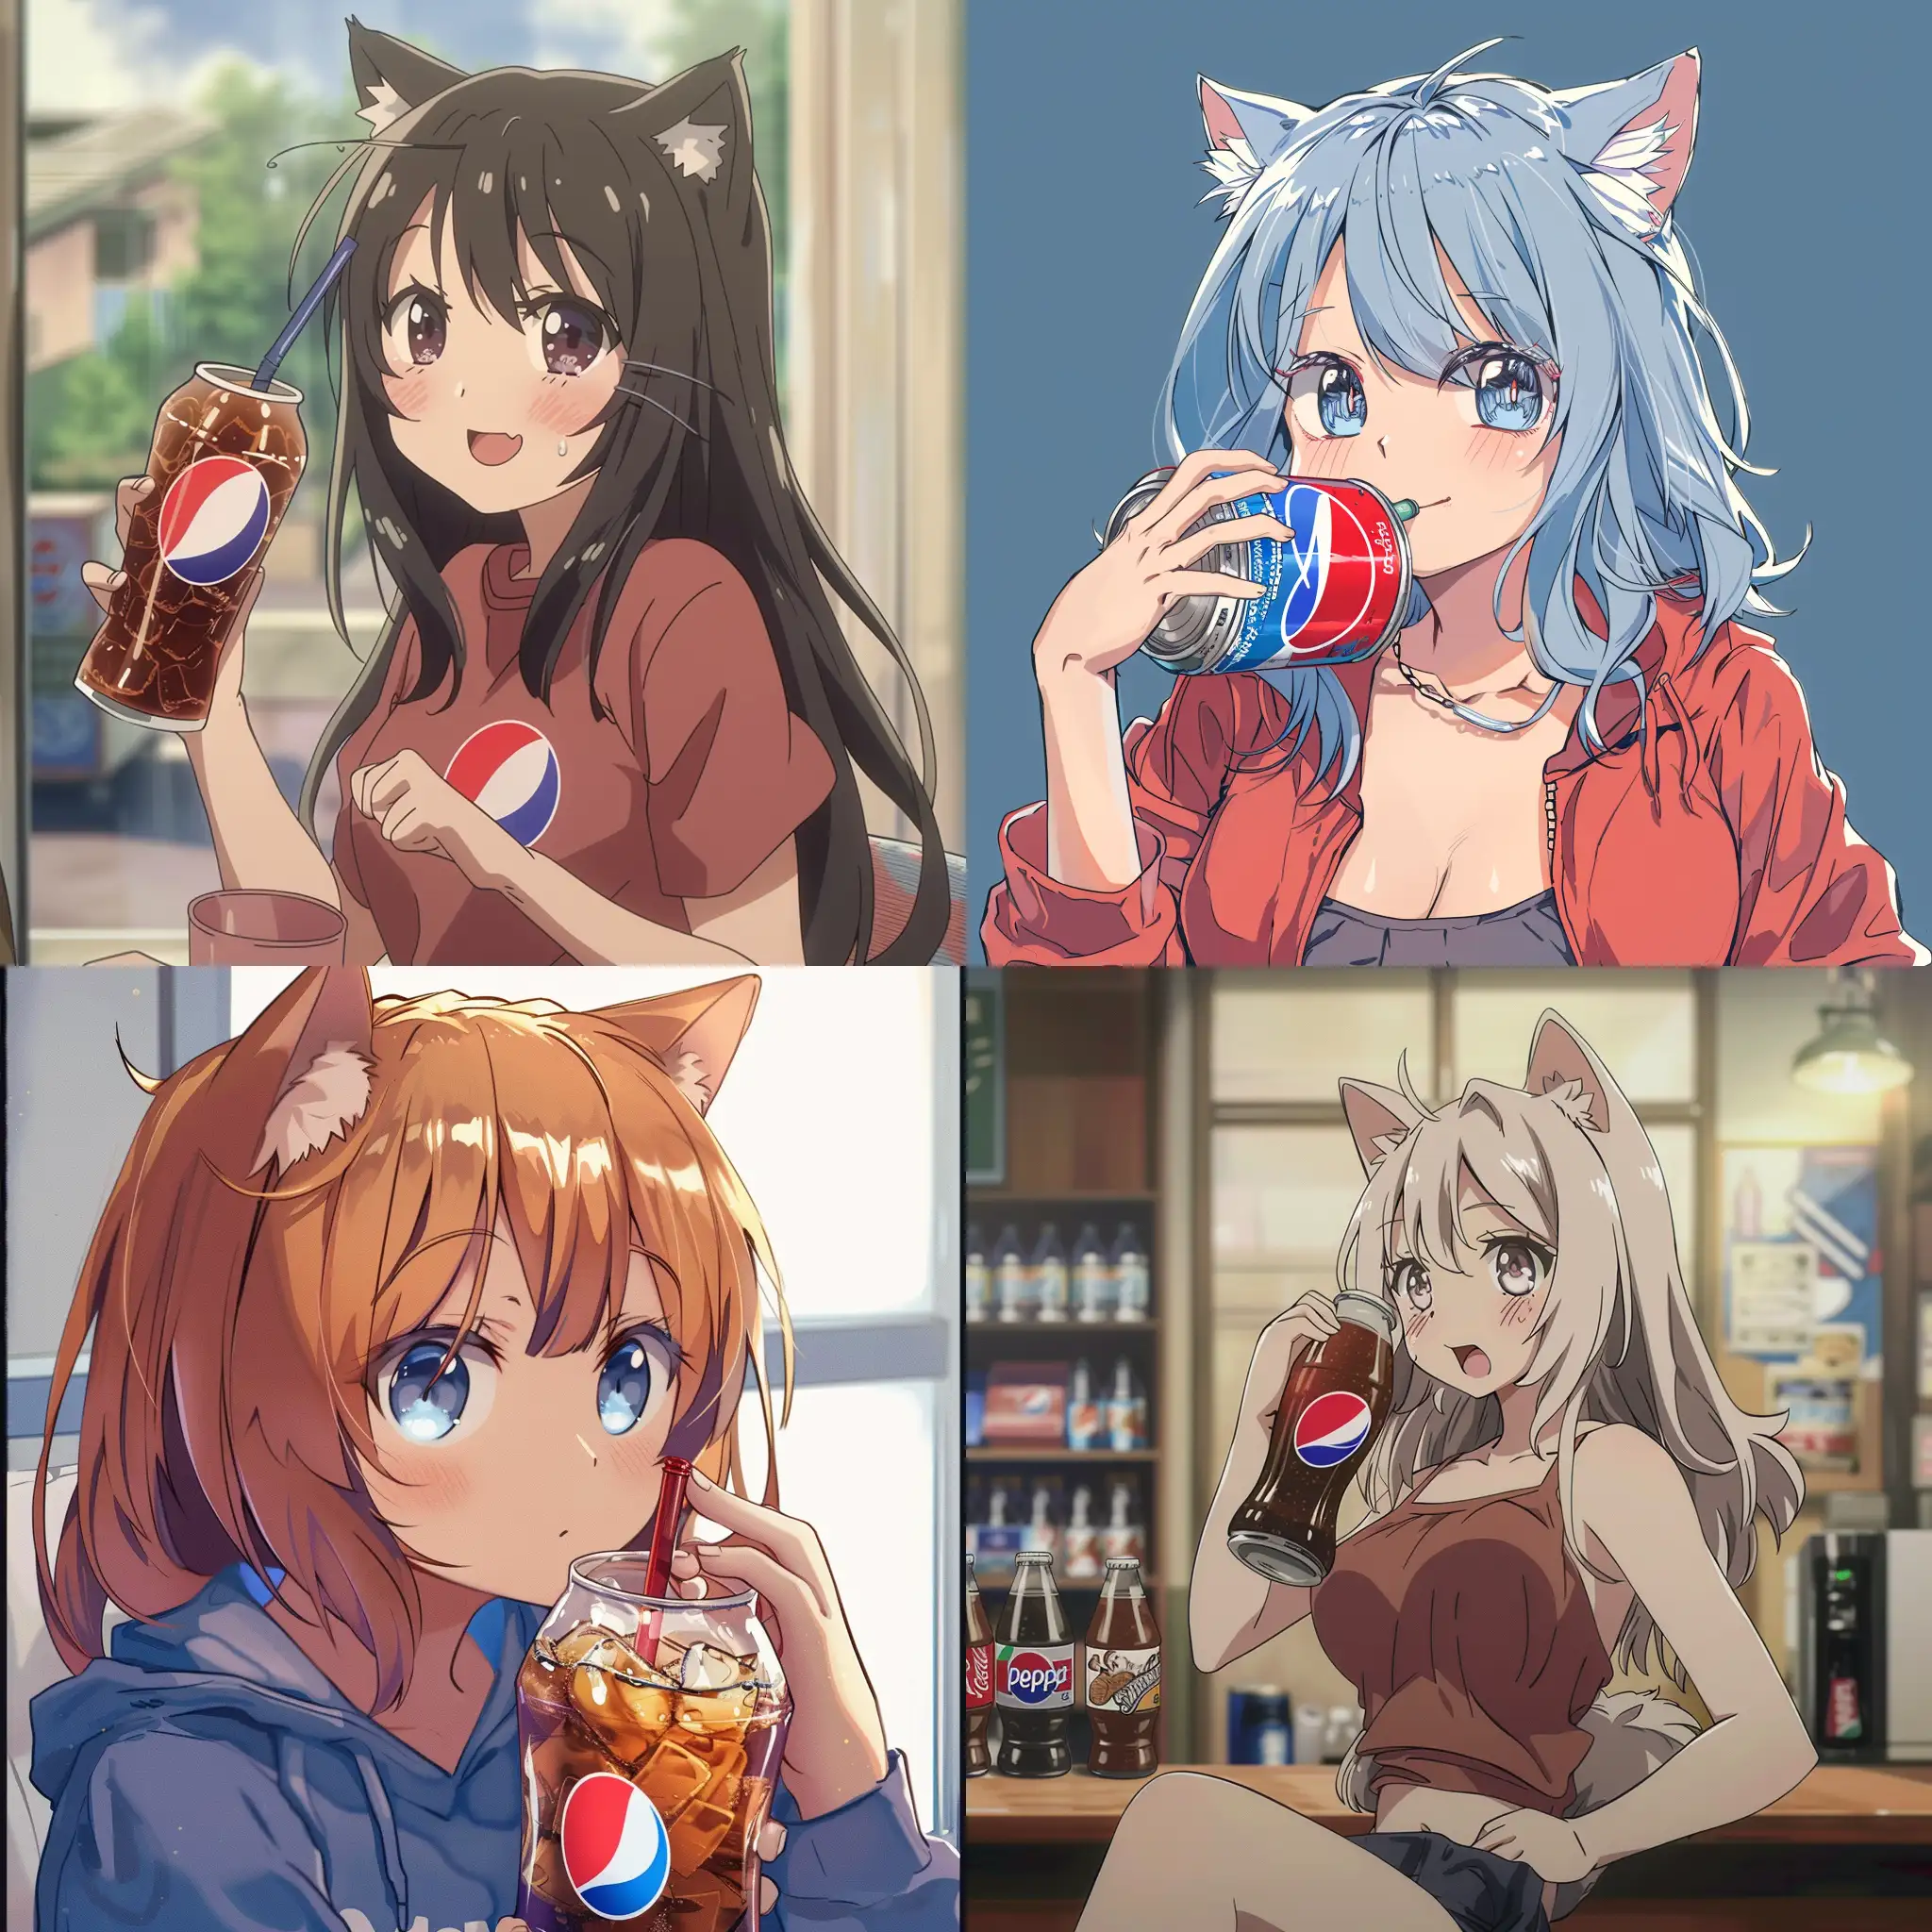 Anime character Neko Ark drinks Pepsi soda